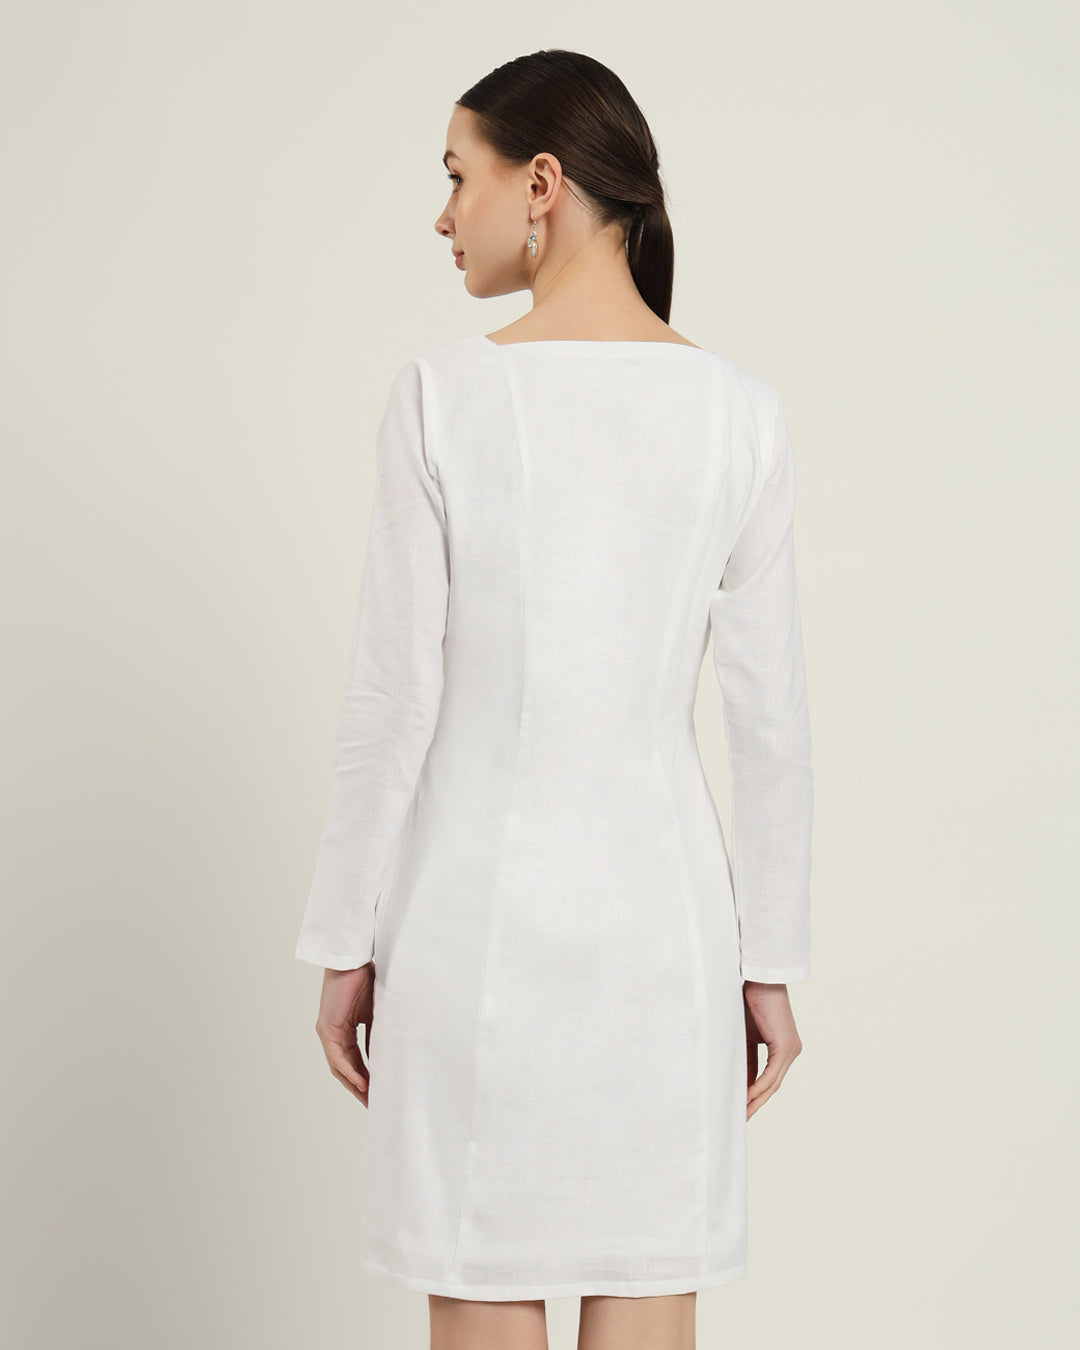 The Auburn White Linen Dress